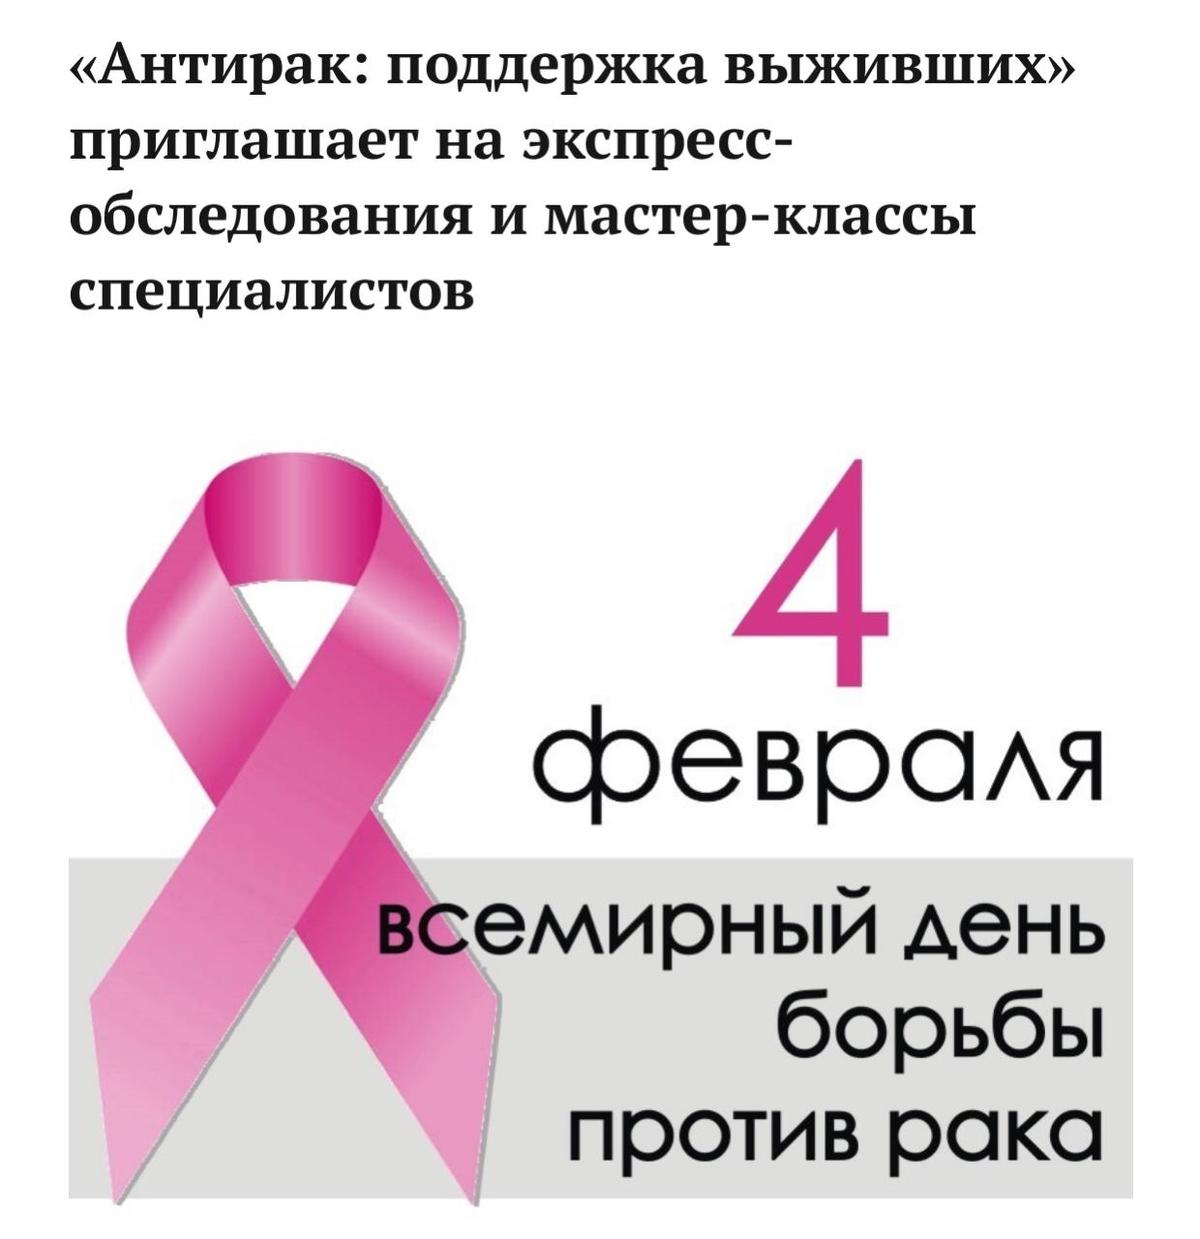 В Якутске состоится традиционная акция против рака